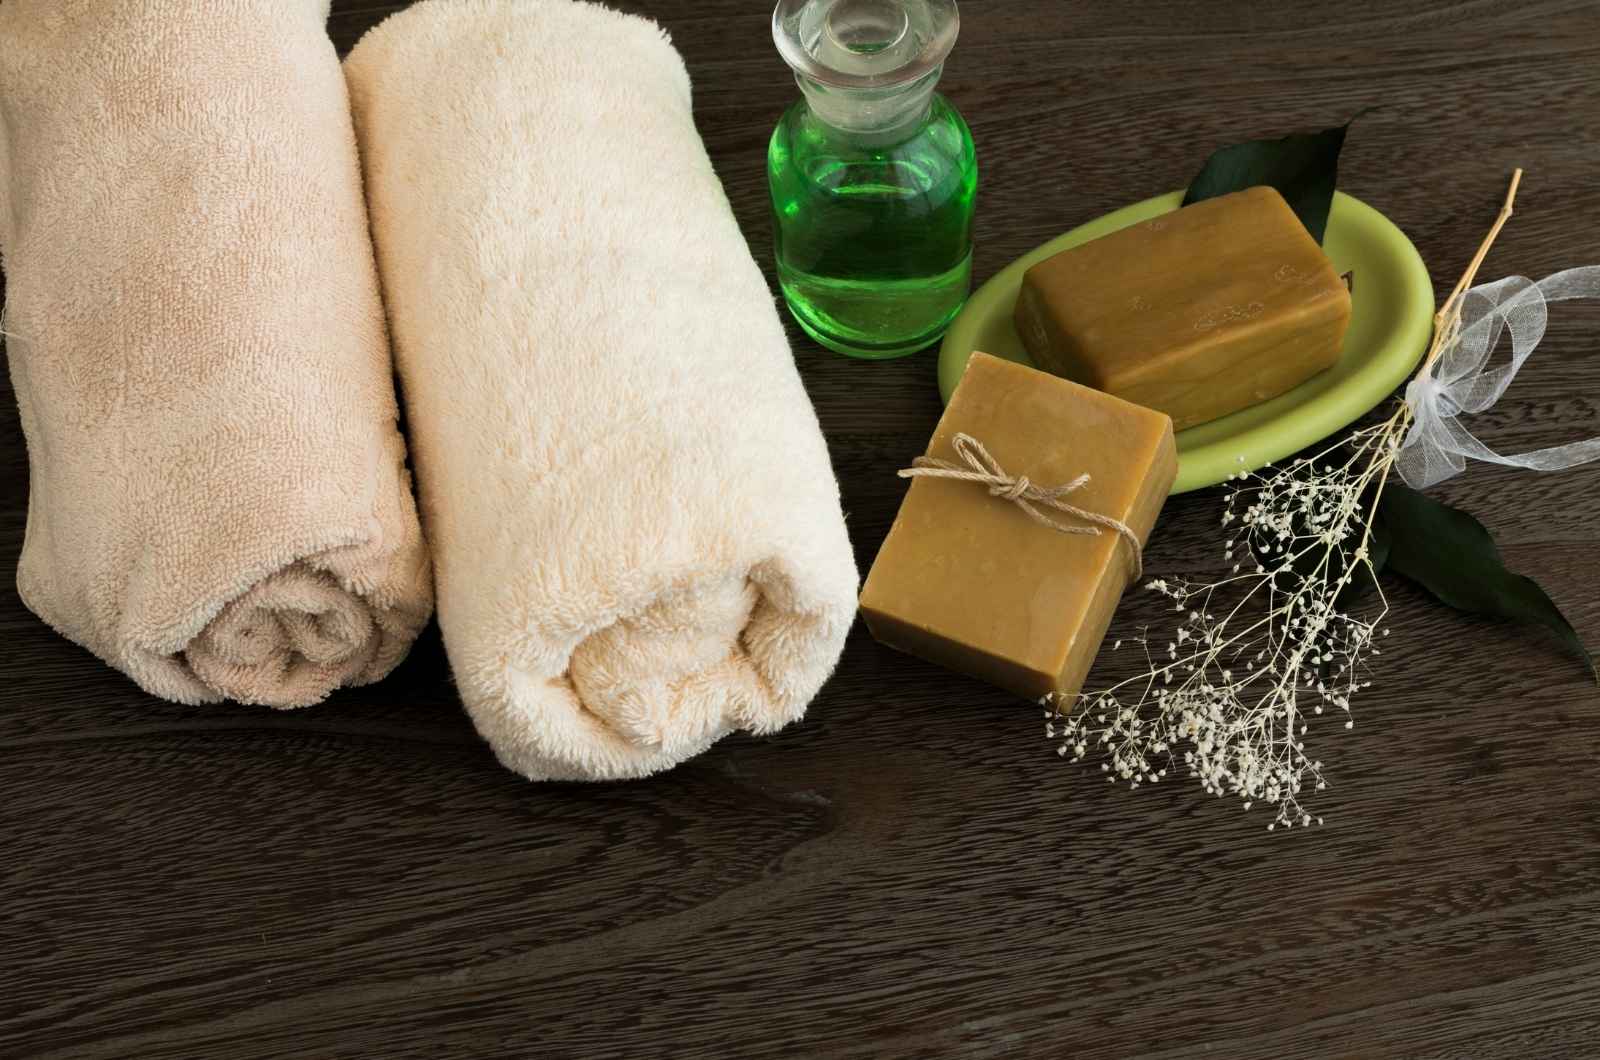 מה זה סבון ארומתרפי?